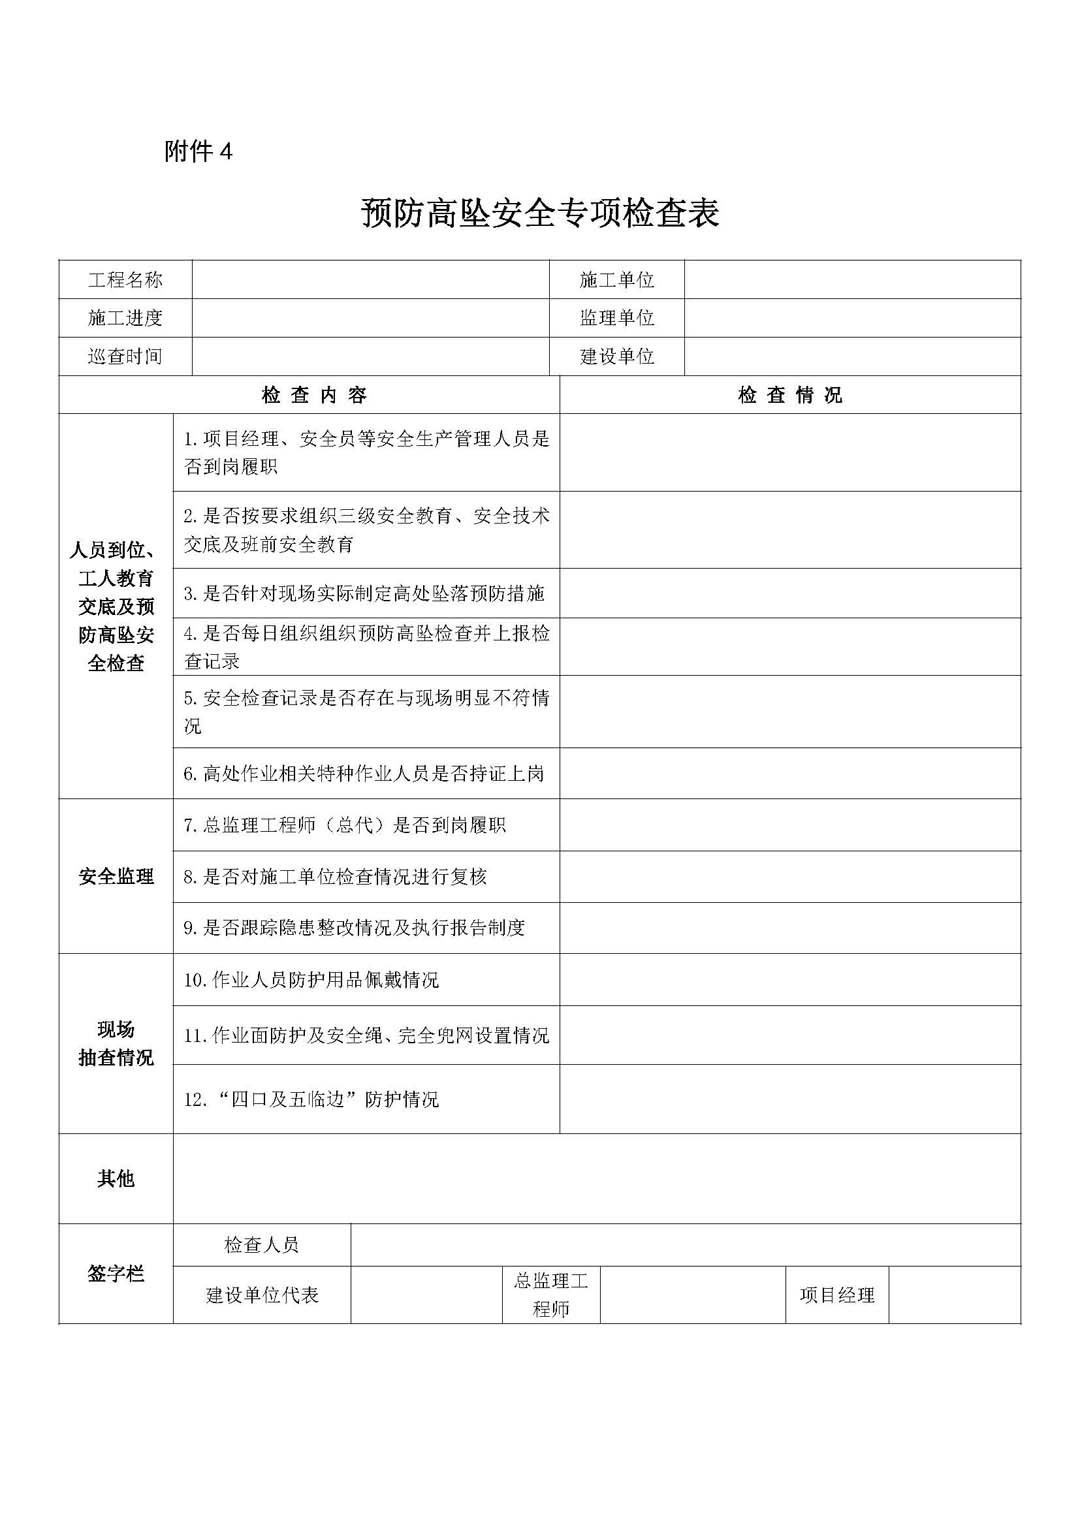 深圳市住房和建设局关于开展预防高坠专项整治行动的通知_页面_13.jpg